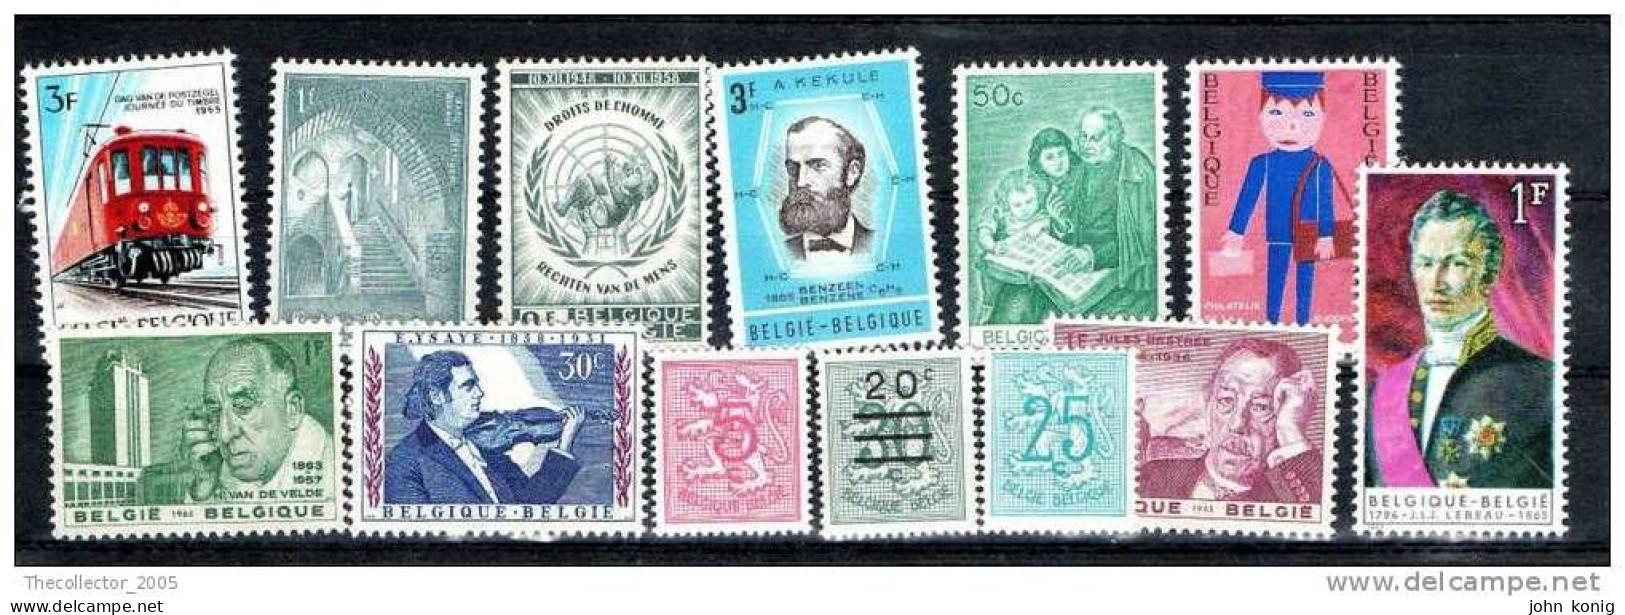 Belgio - Belgie - Belgique - Stamps Lot - New - Neuf - Superbe Lot - Sammlungen